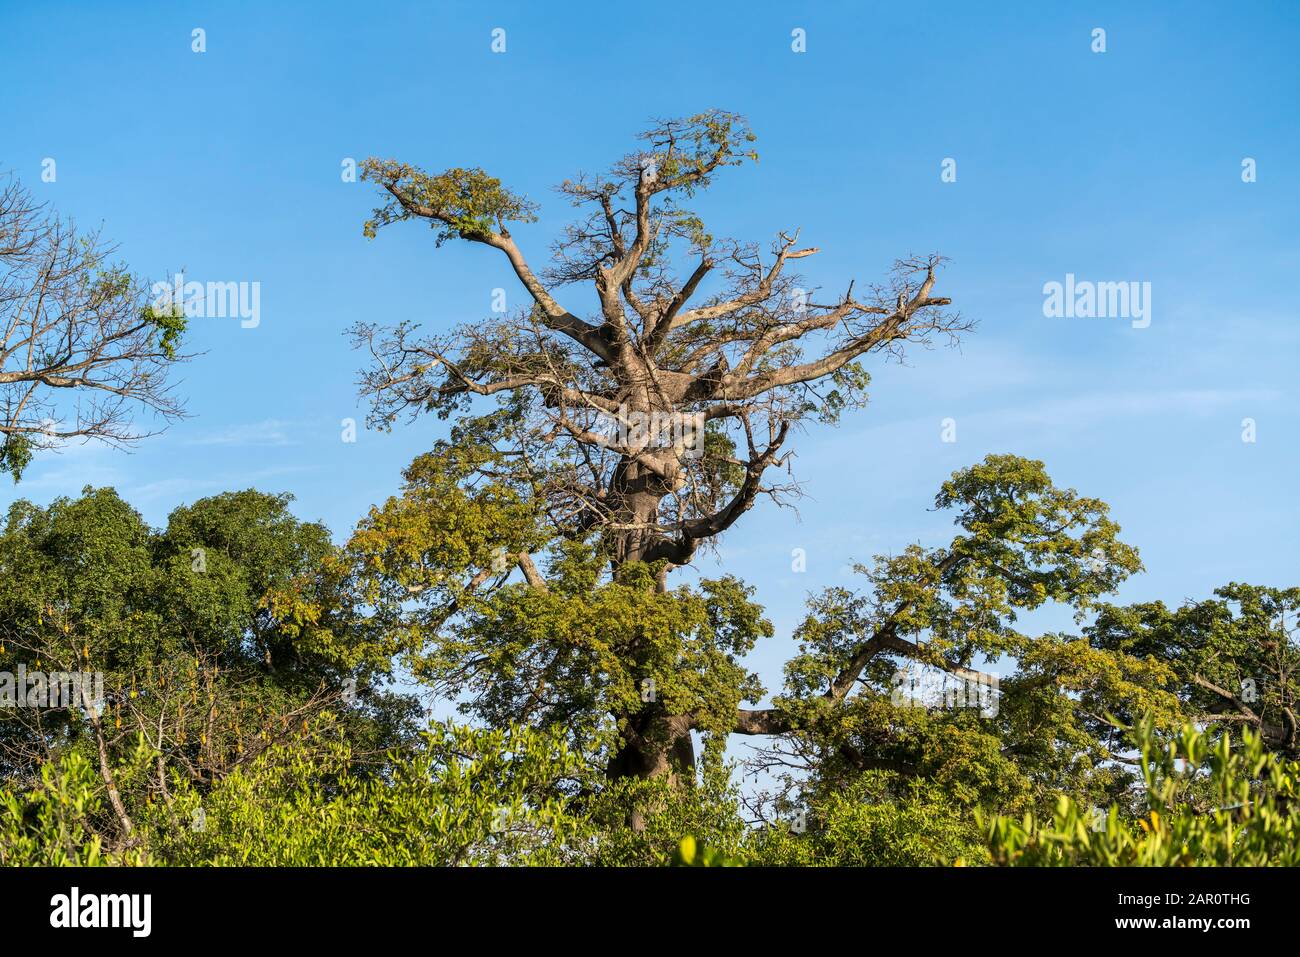 Kapokbaum, Bintang, Gambia, Westafrika  |  Kapok tree, Bintang, Gambia, West Africa, Stock Photo